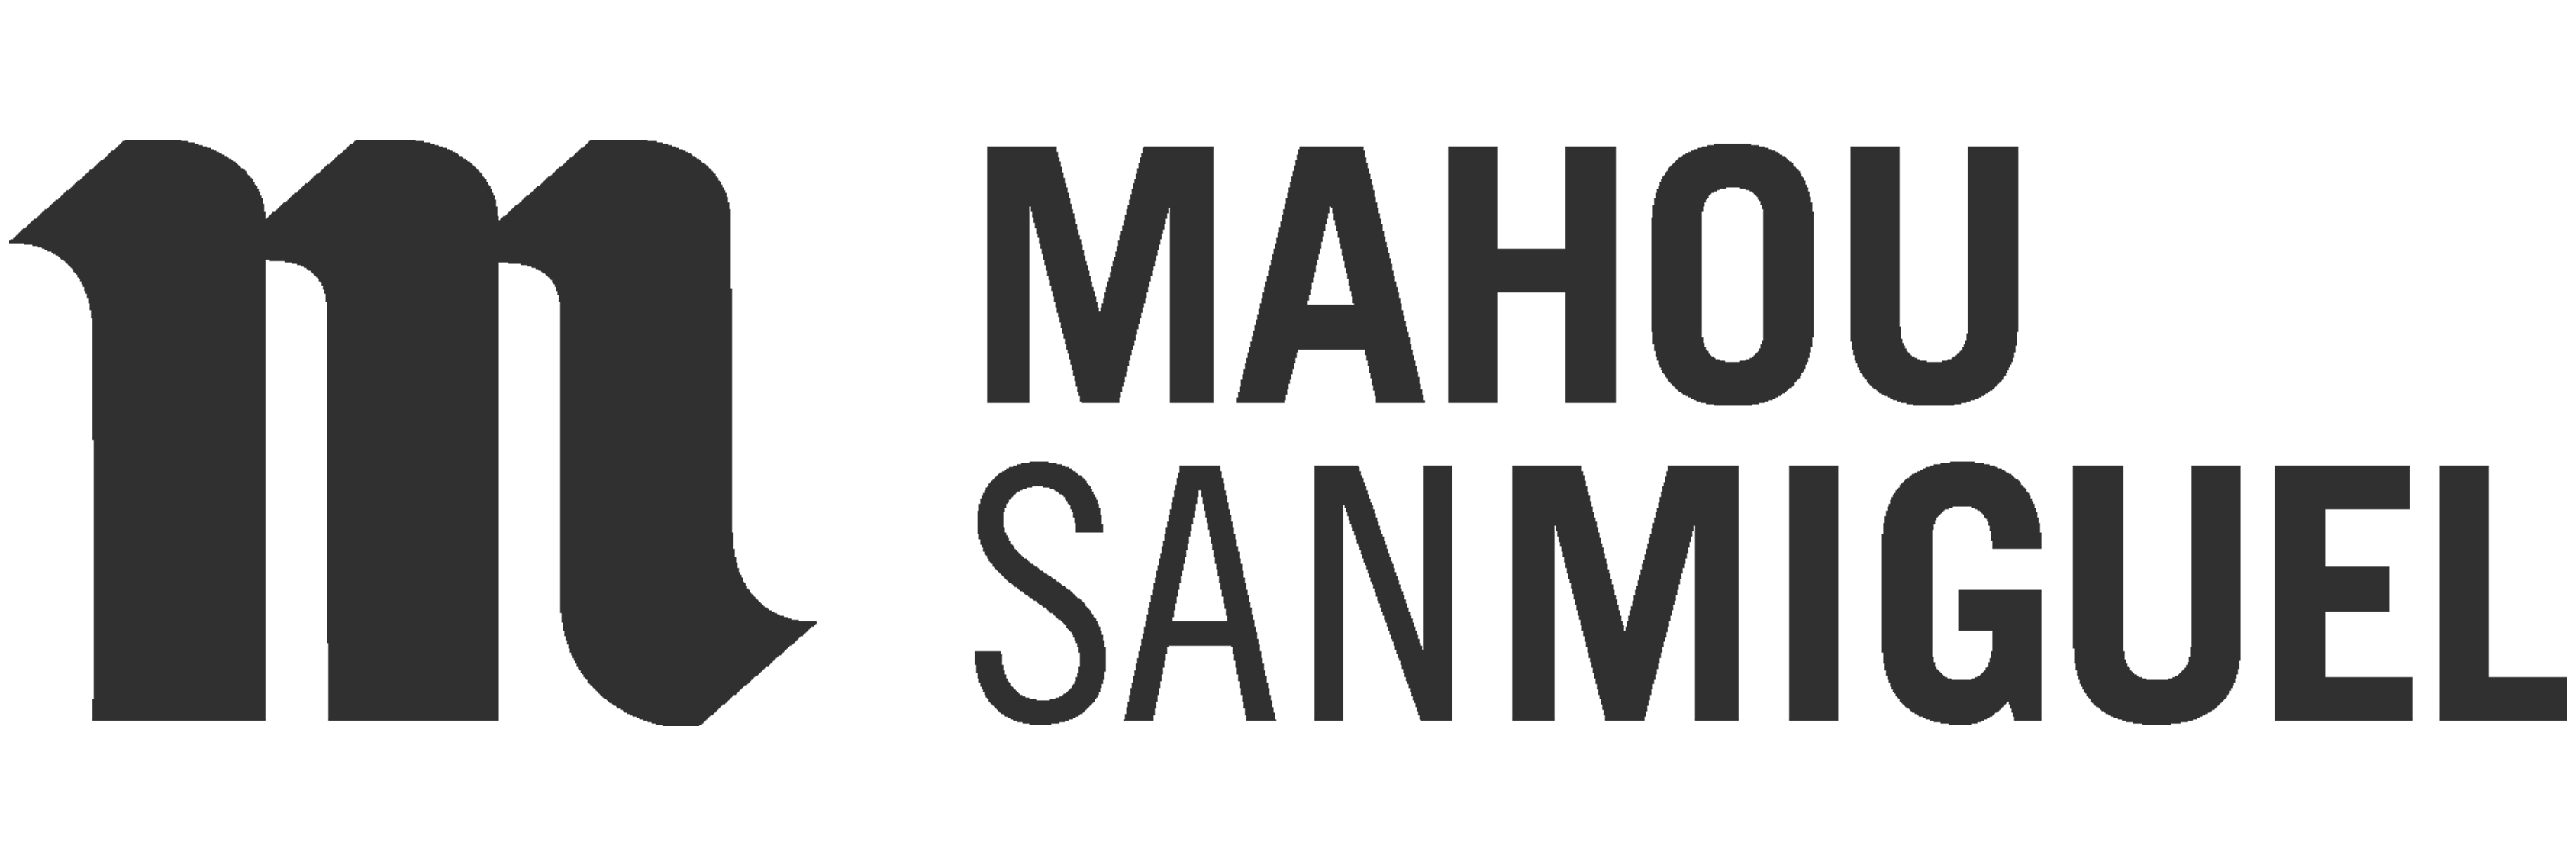 MAHOU SAN MIGUEL